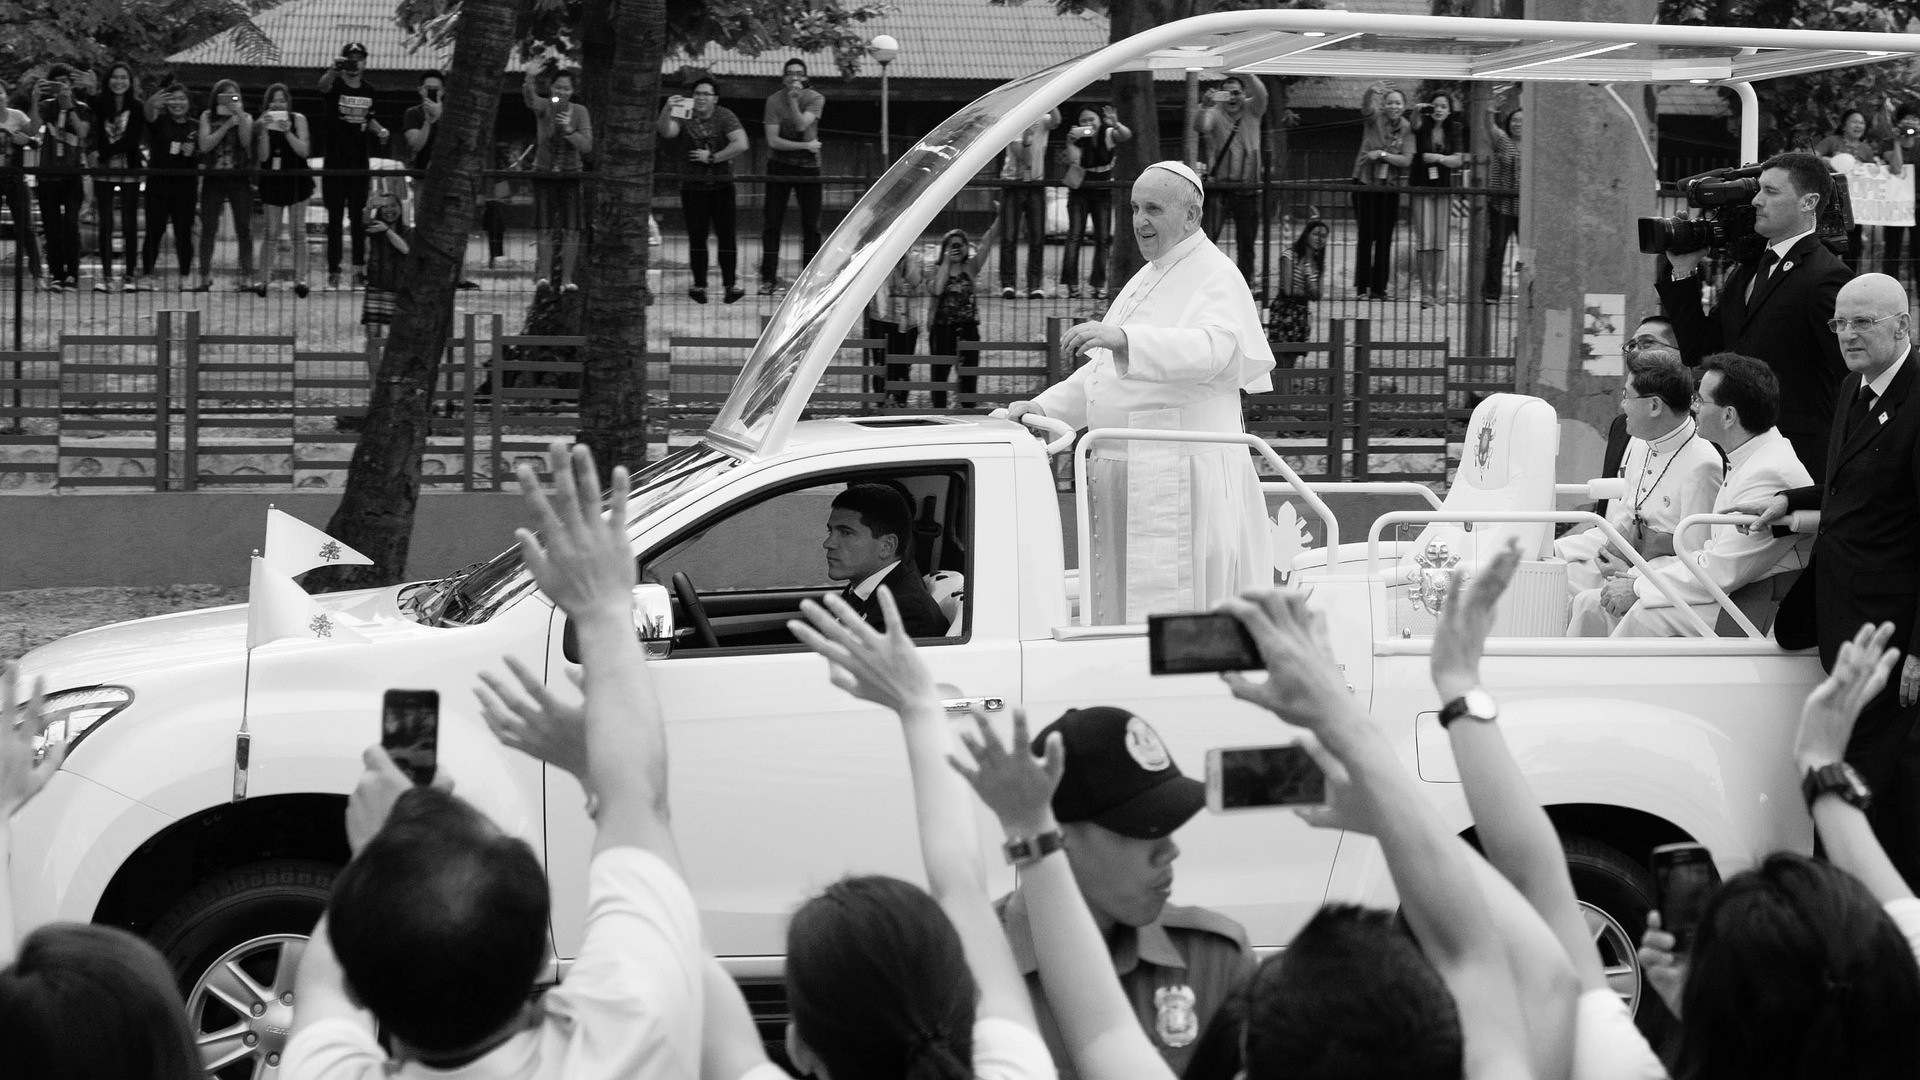 En janvier 2015, le pape François avait rassemblé sept millions de personnes à Manille lors de sa visite. (Photo: Flickr/jojo nicdao/CC BY 2.0)